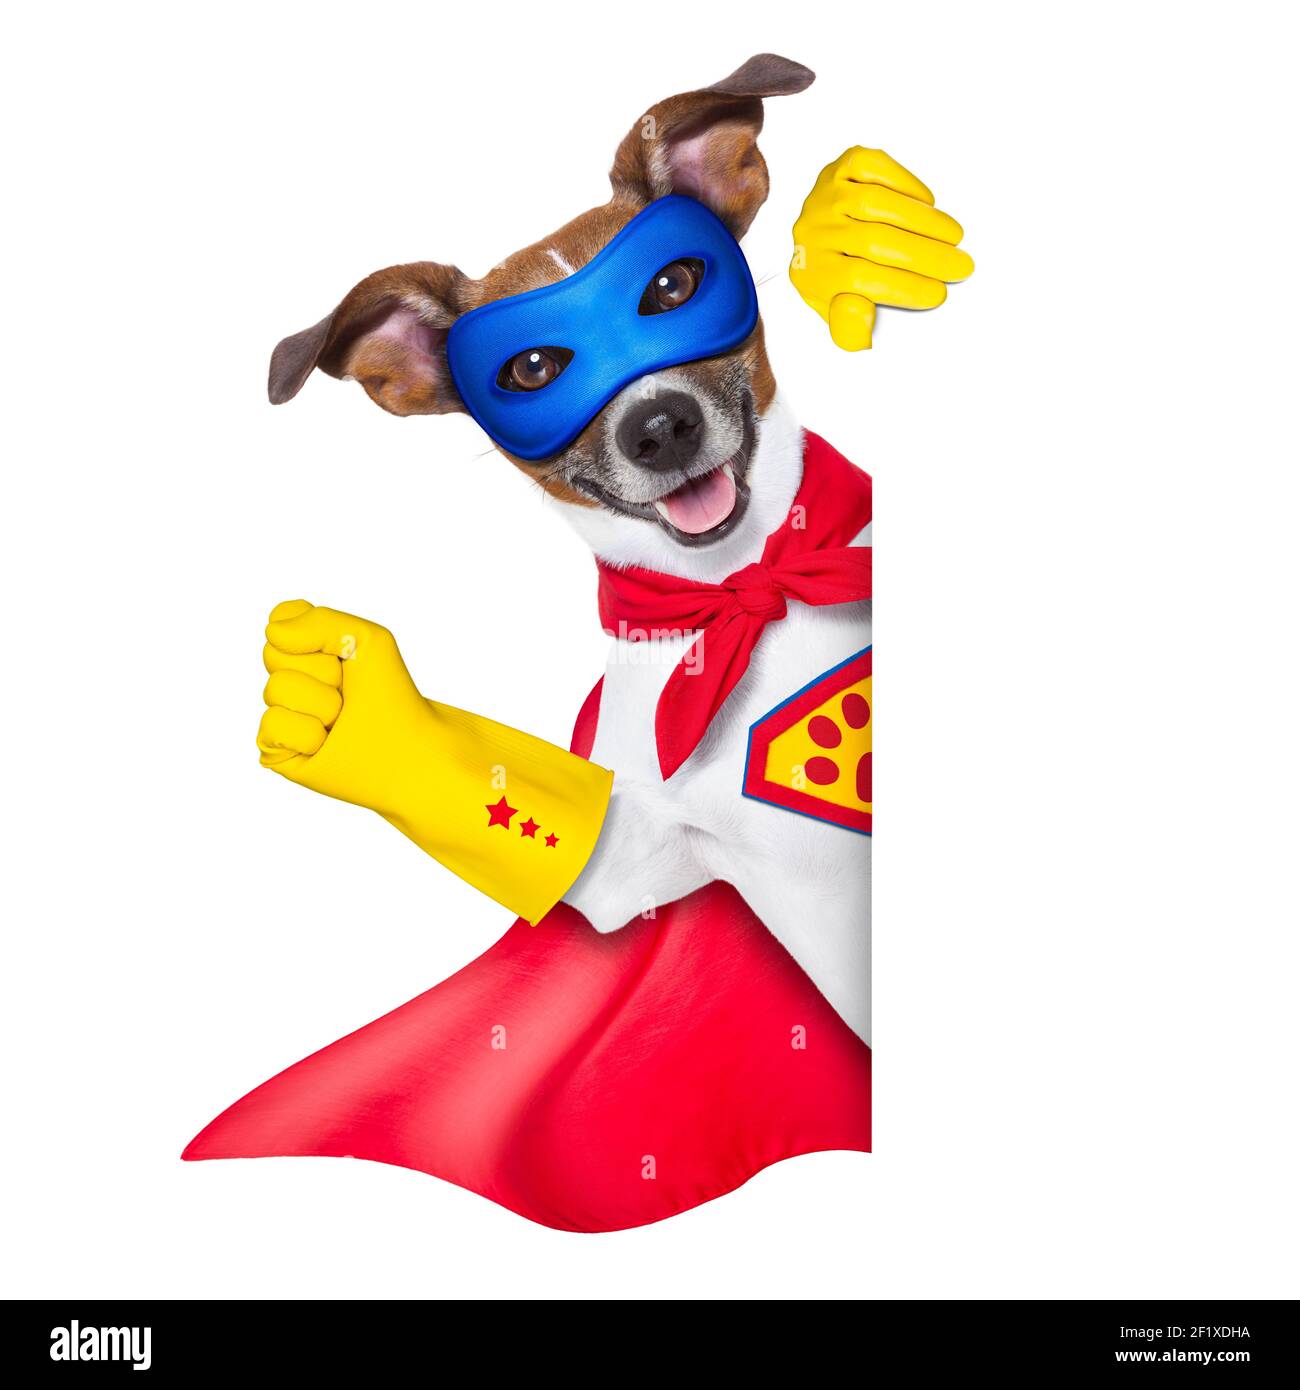 Super hero dog Stock Photo